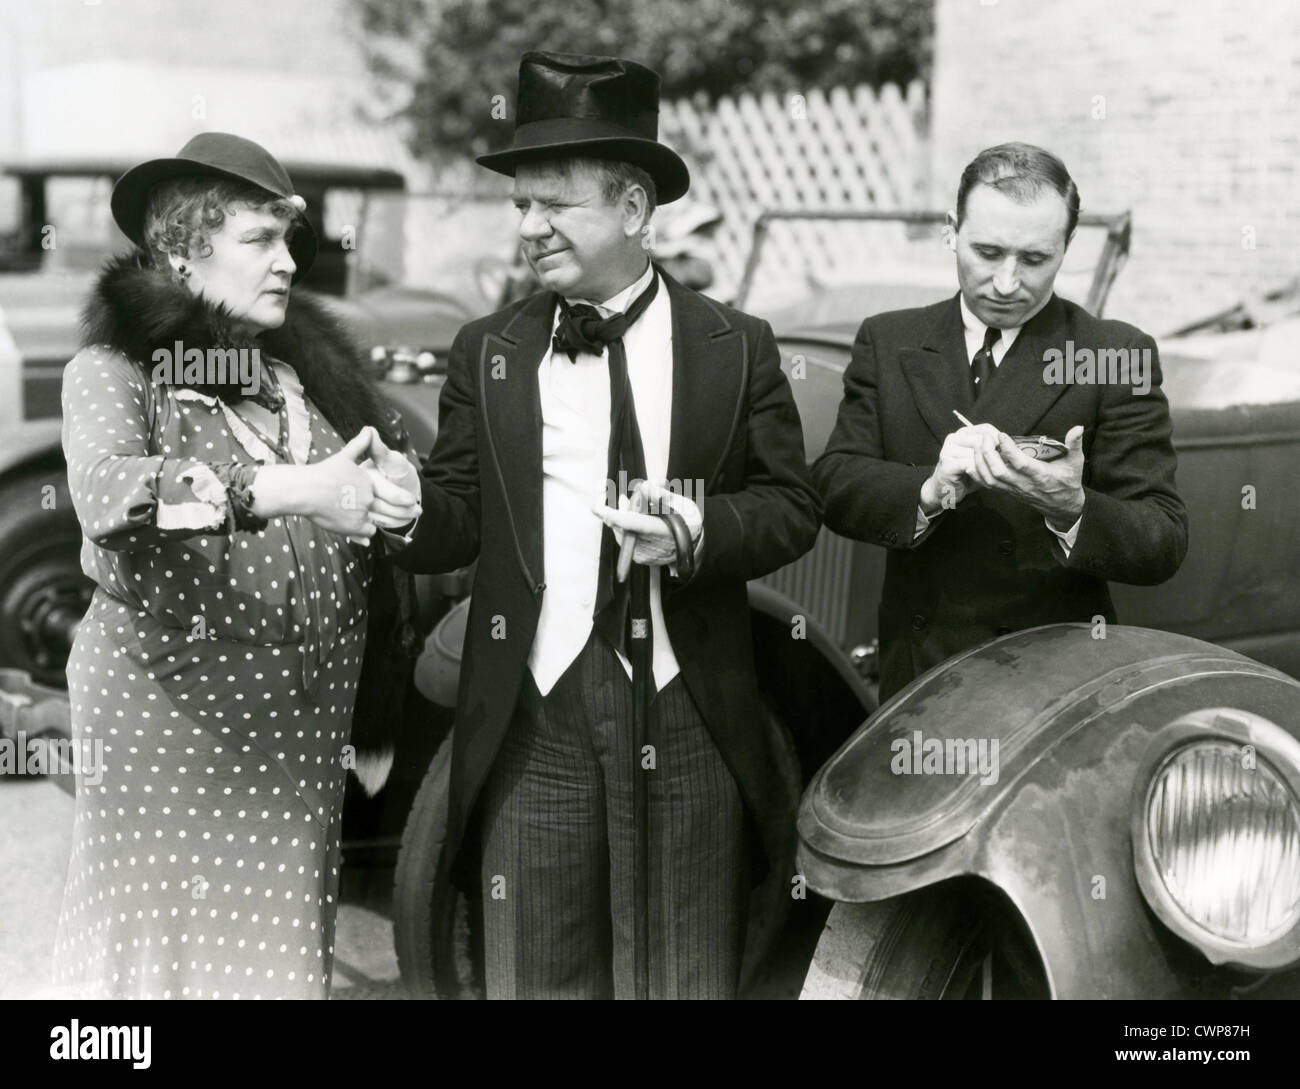 IF I HAD A MILLION (1932) W C FIELDS, ALISON SKIPWORTH ERNST LUBITSCH (DIR) 002 MOVIETORE COLLECTION LTD Stock Photo